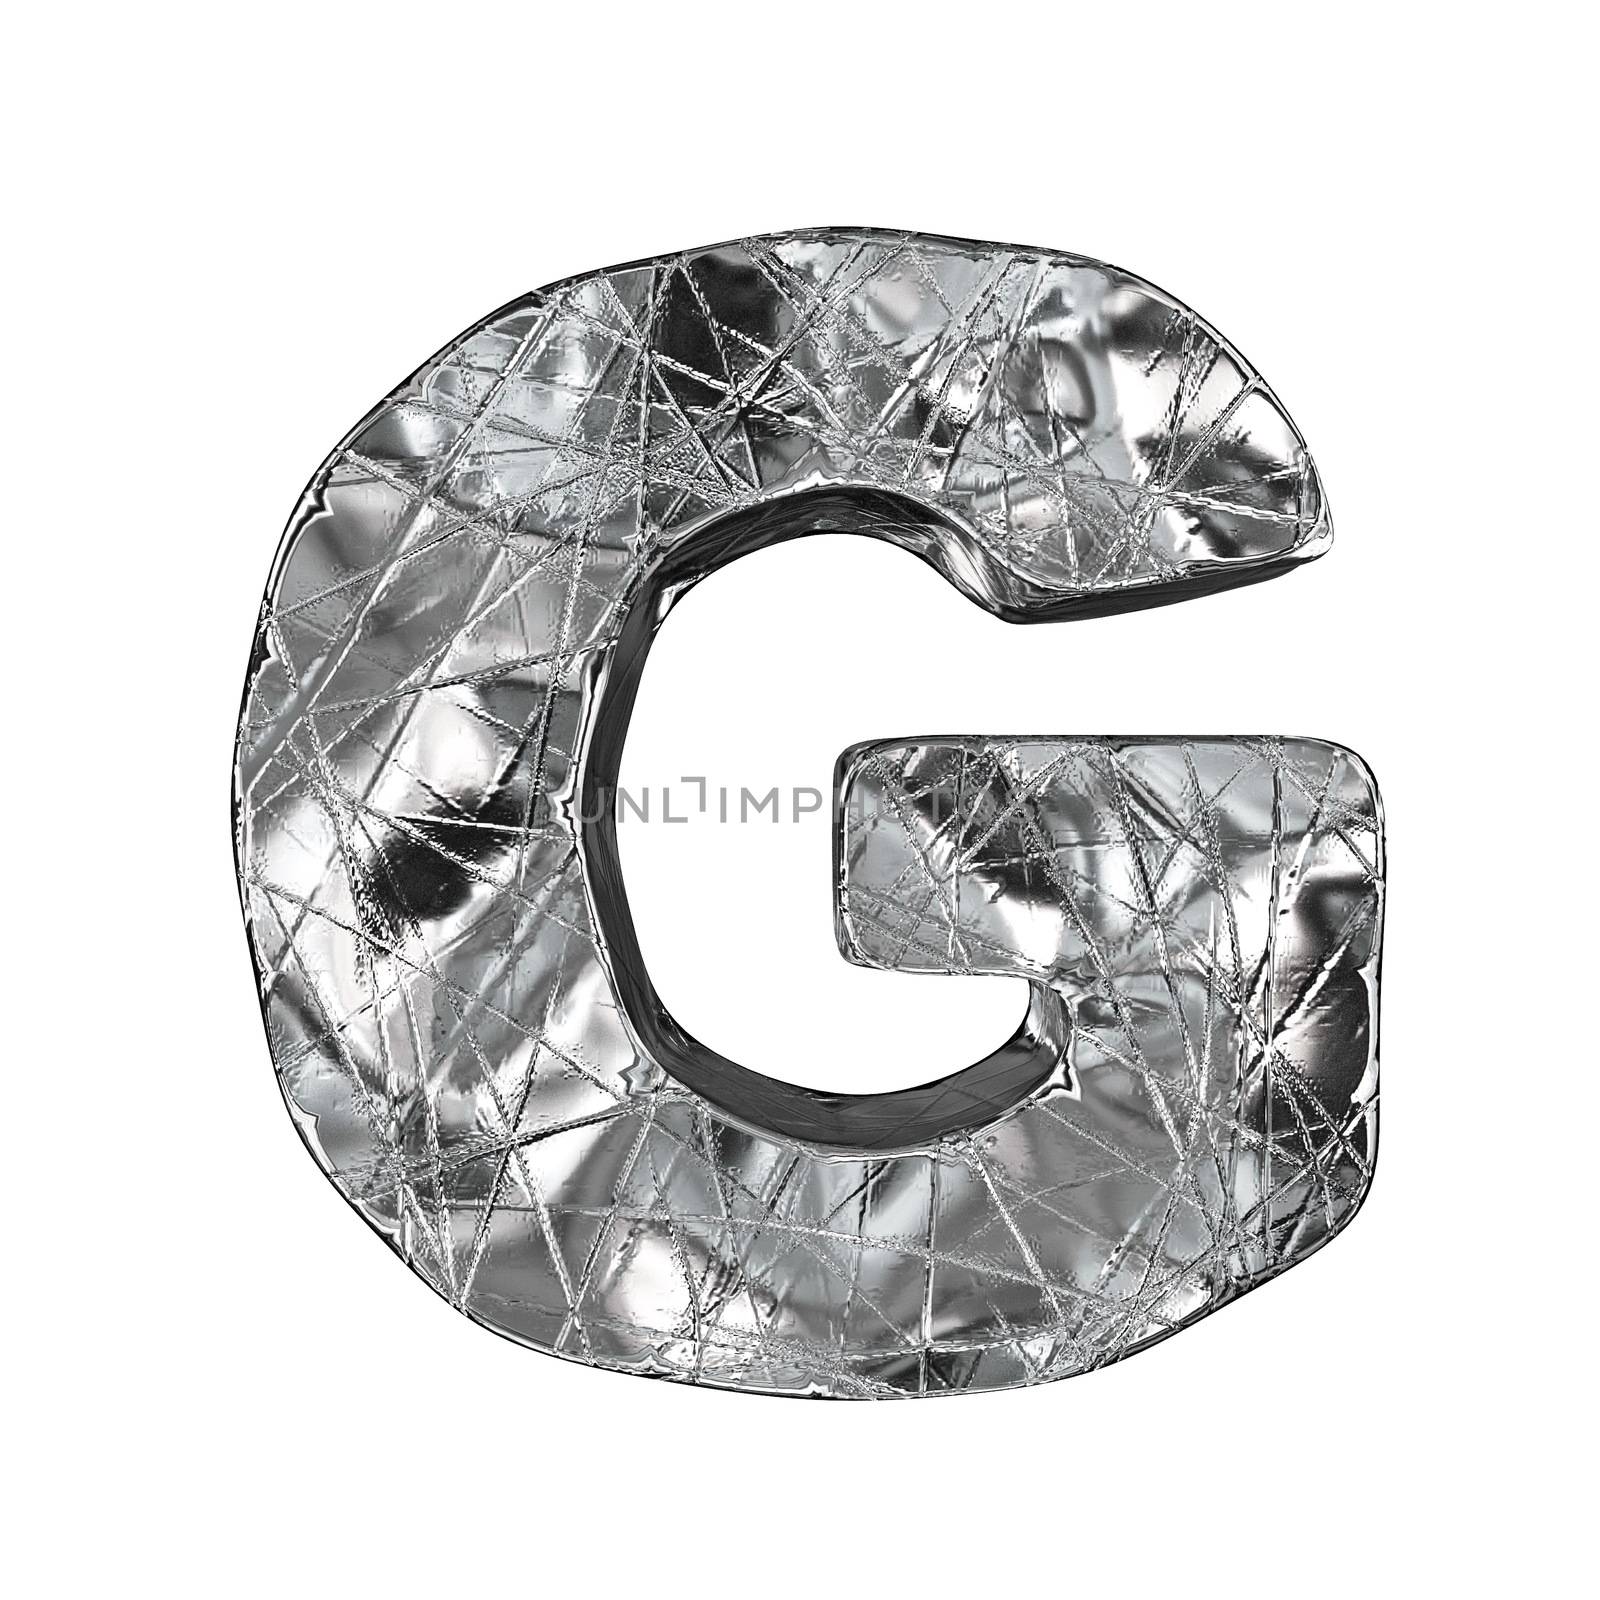 Grunge aluminium foil font letter G 3D render illustration isolated on white background